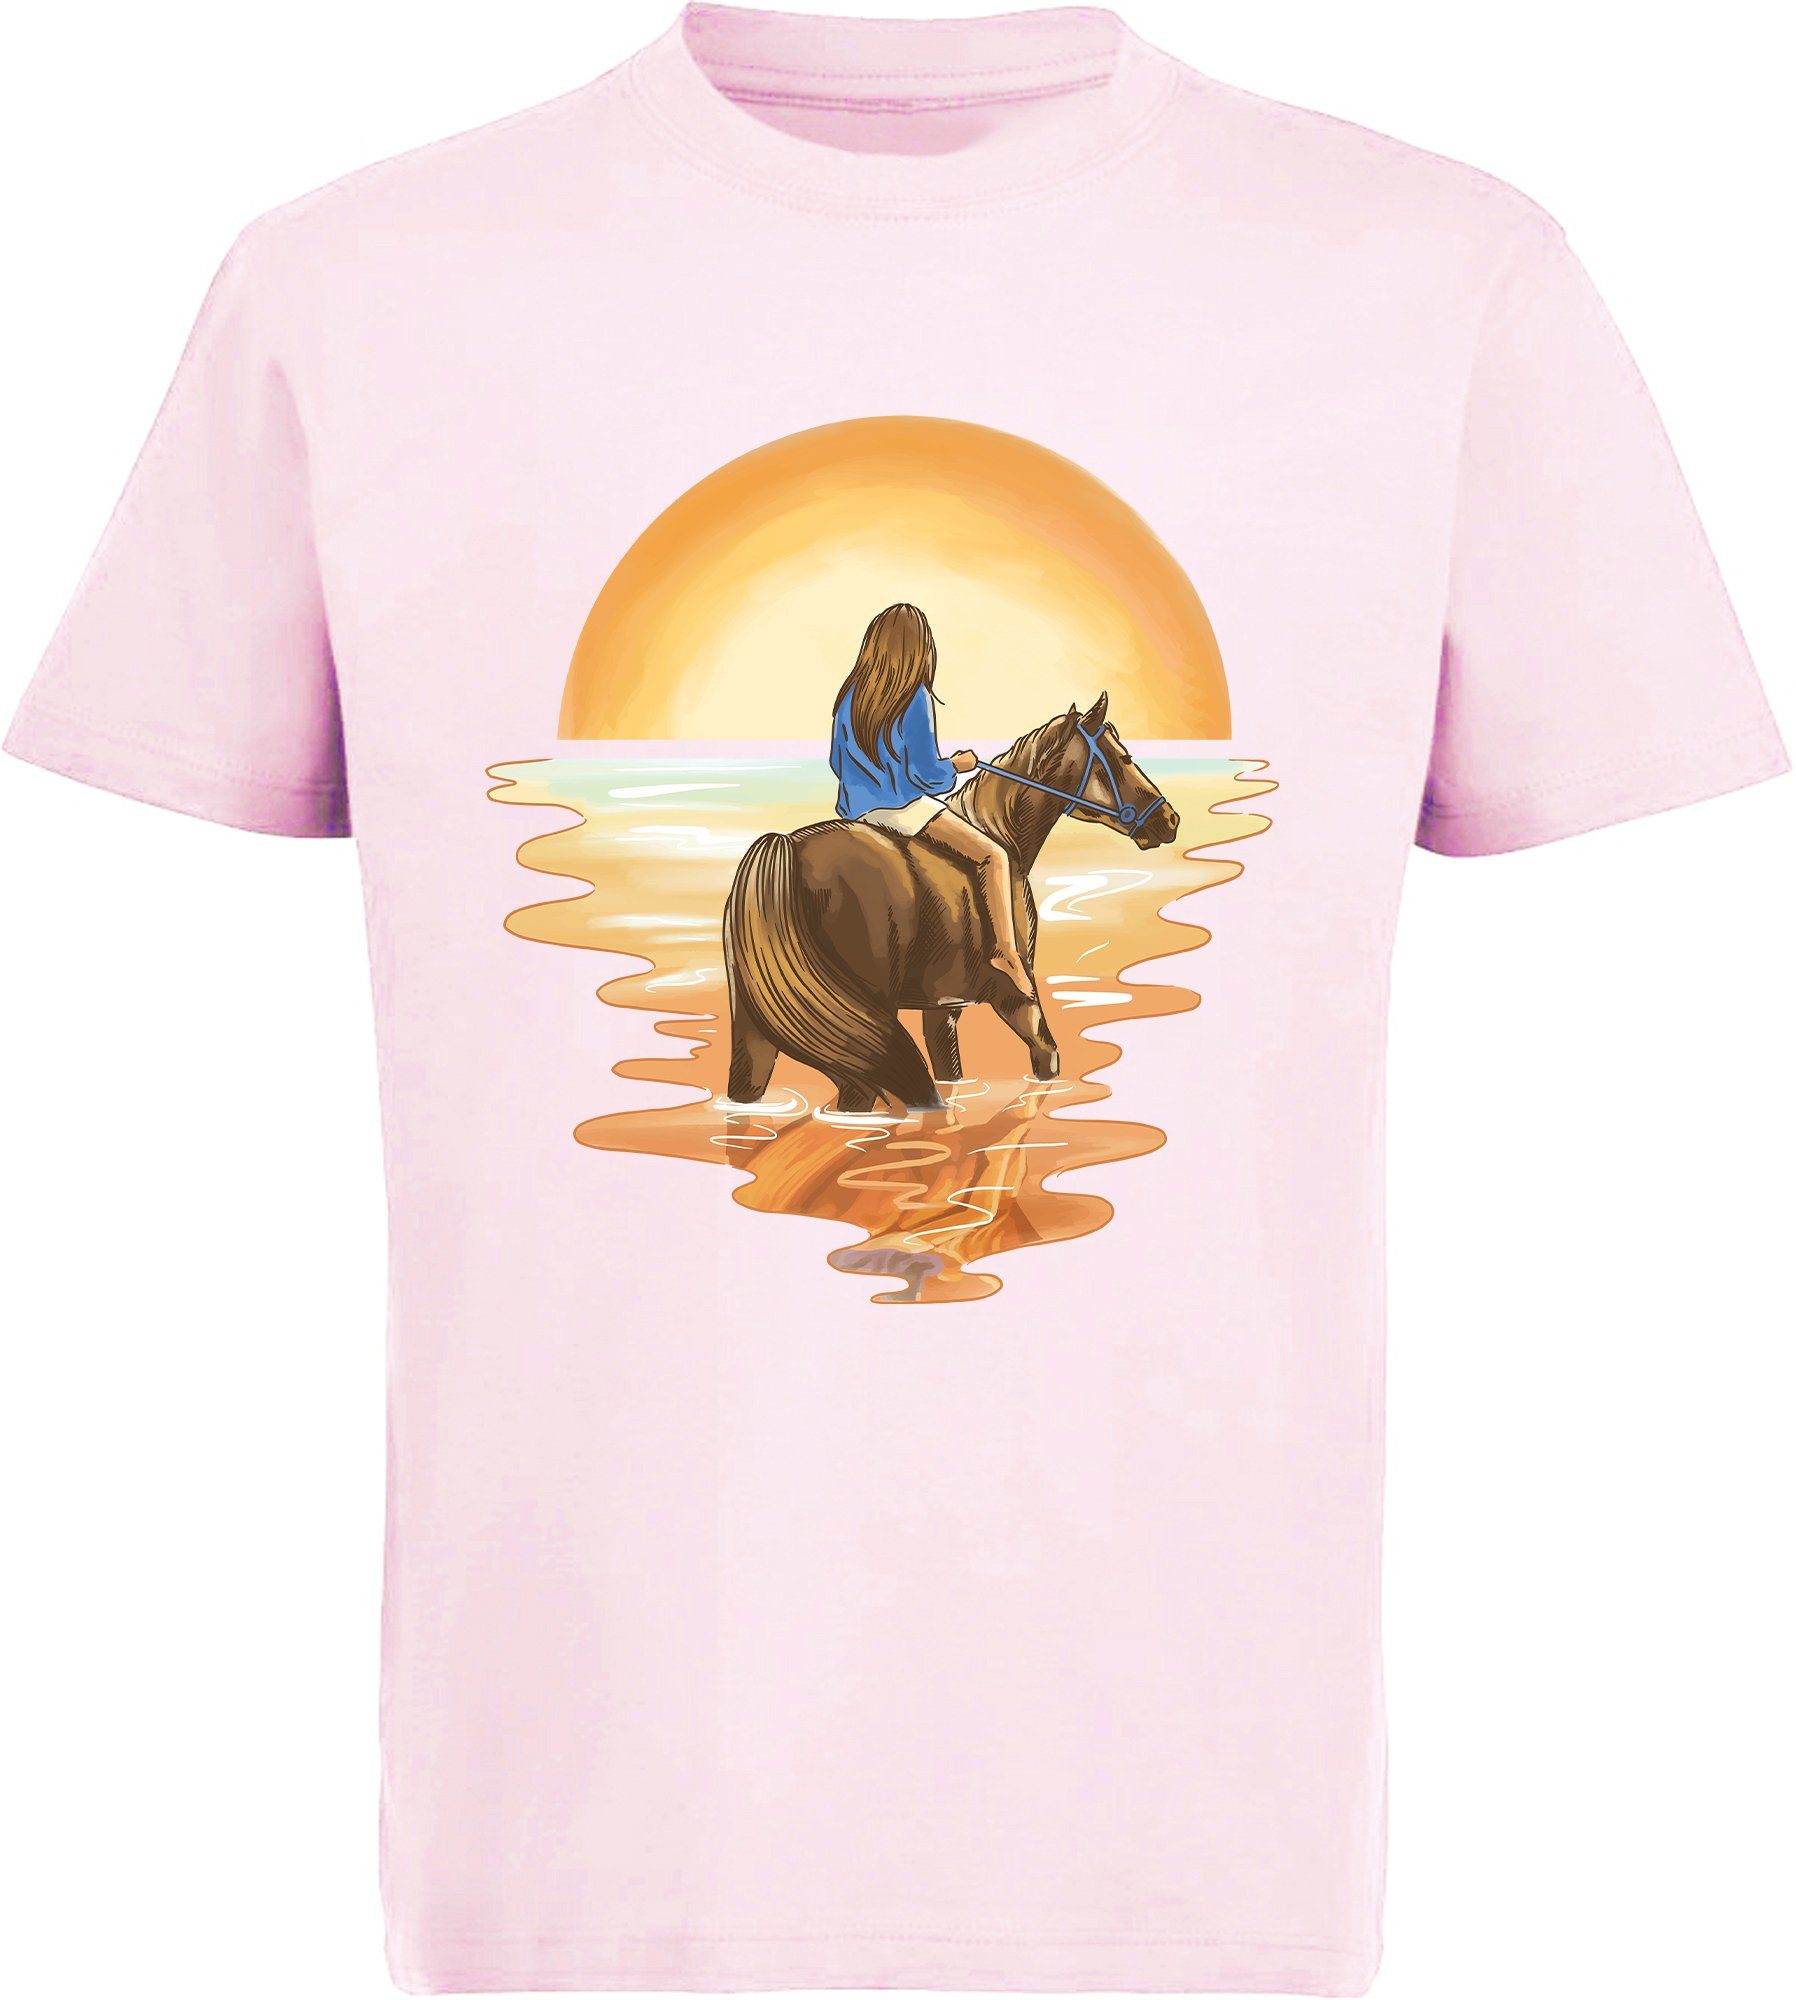 Baumwollshirt Reiterin Wasser Aufdruck, MyDesign24 bedrucktes Print-Shirt rosa Pferd im i140 mit Mädchen T-Shirt mit